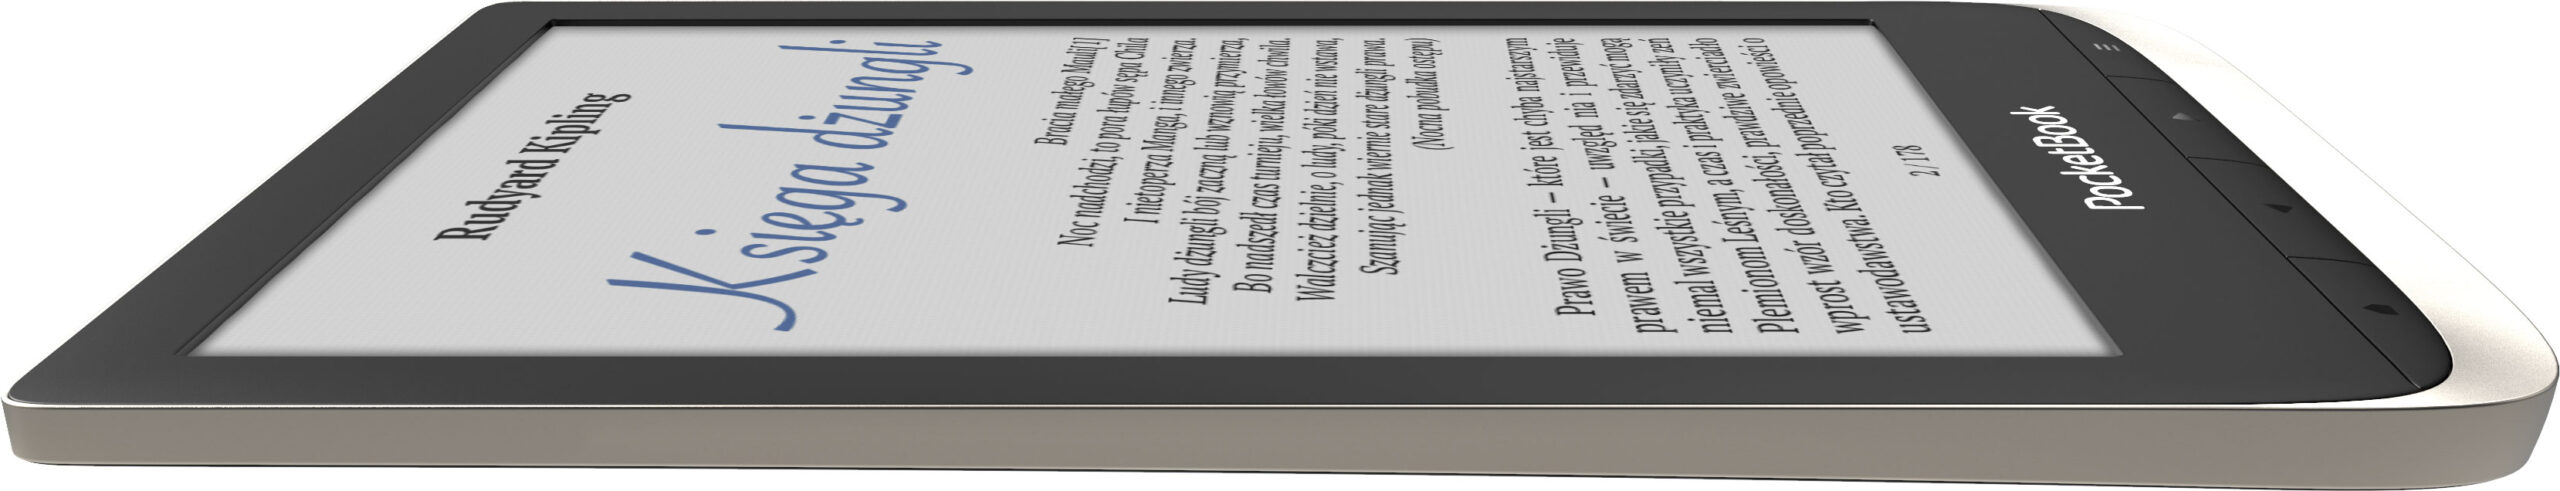 pocketbook color czytnik z kolorowym ekranem